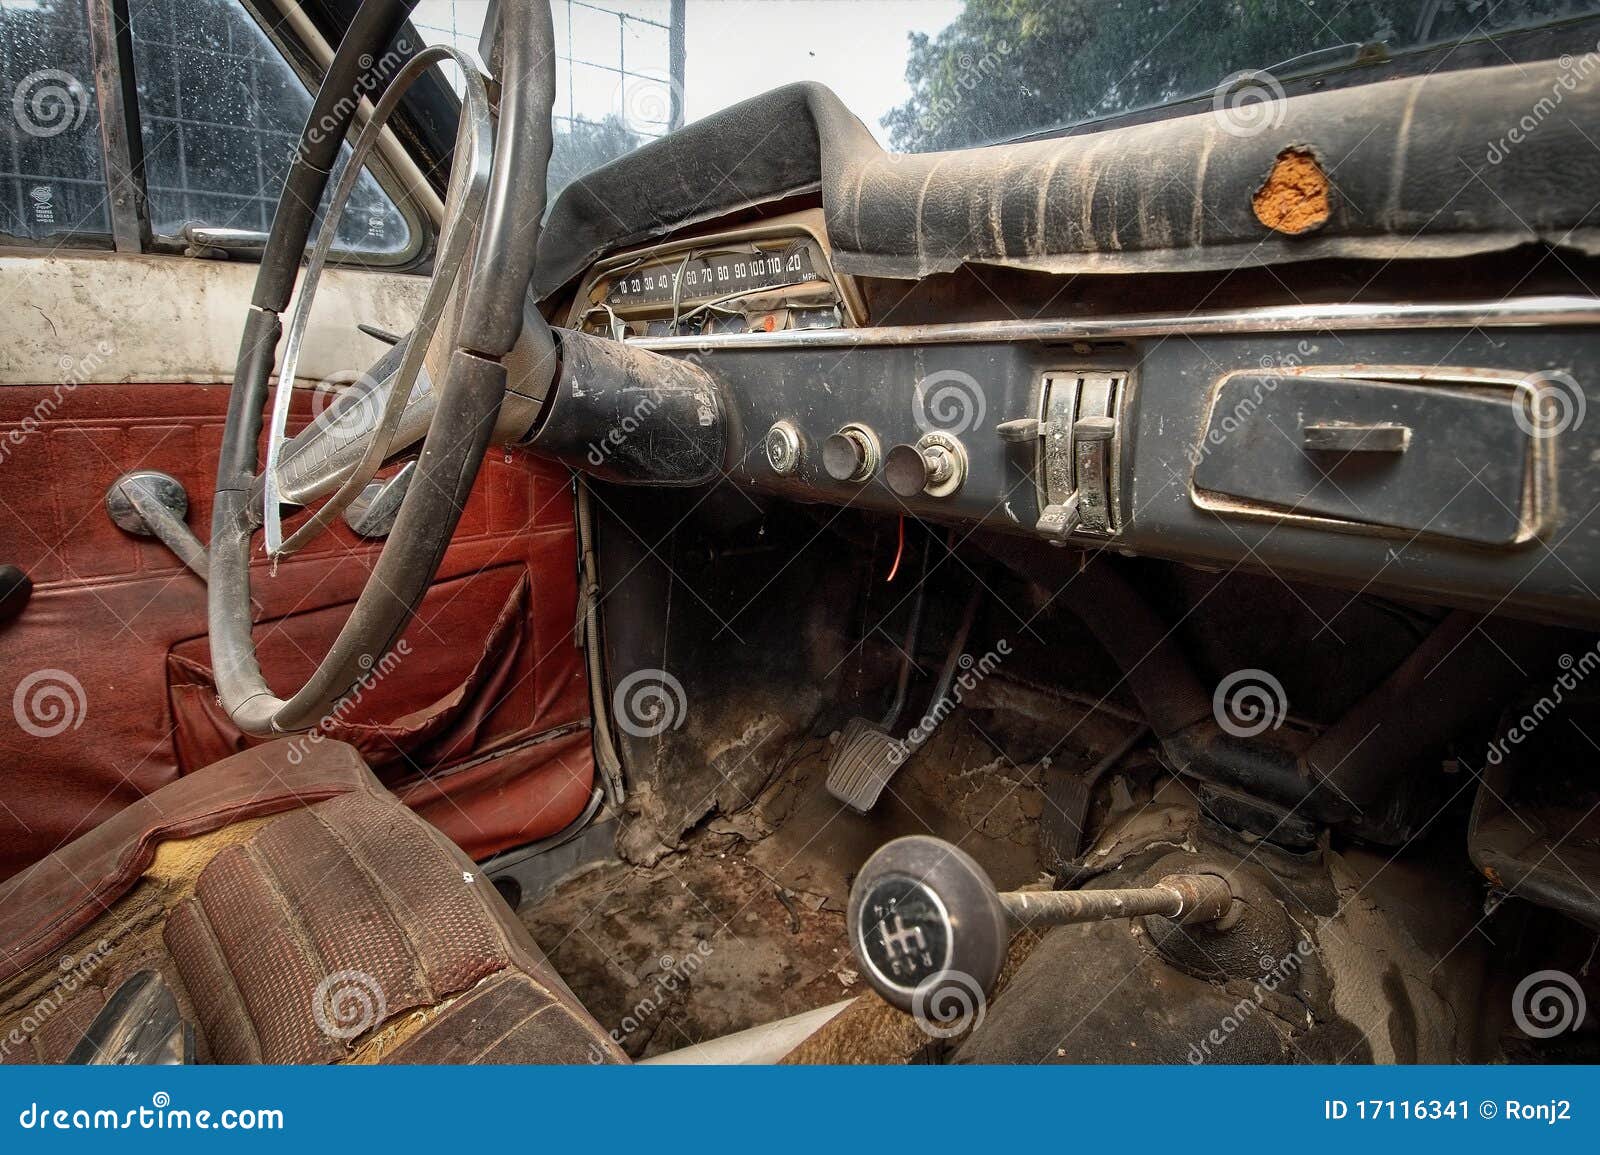 Classic Car In Disrepair Stock Image Image Of Interior